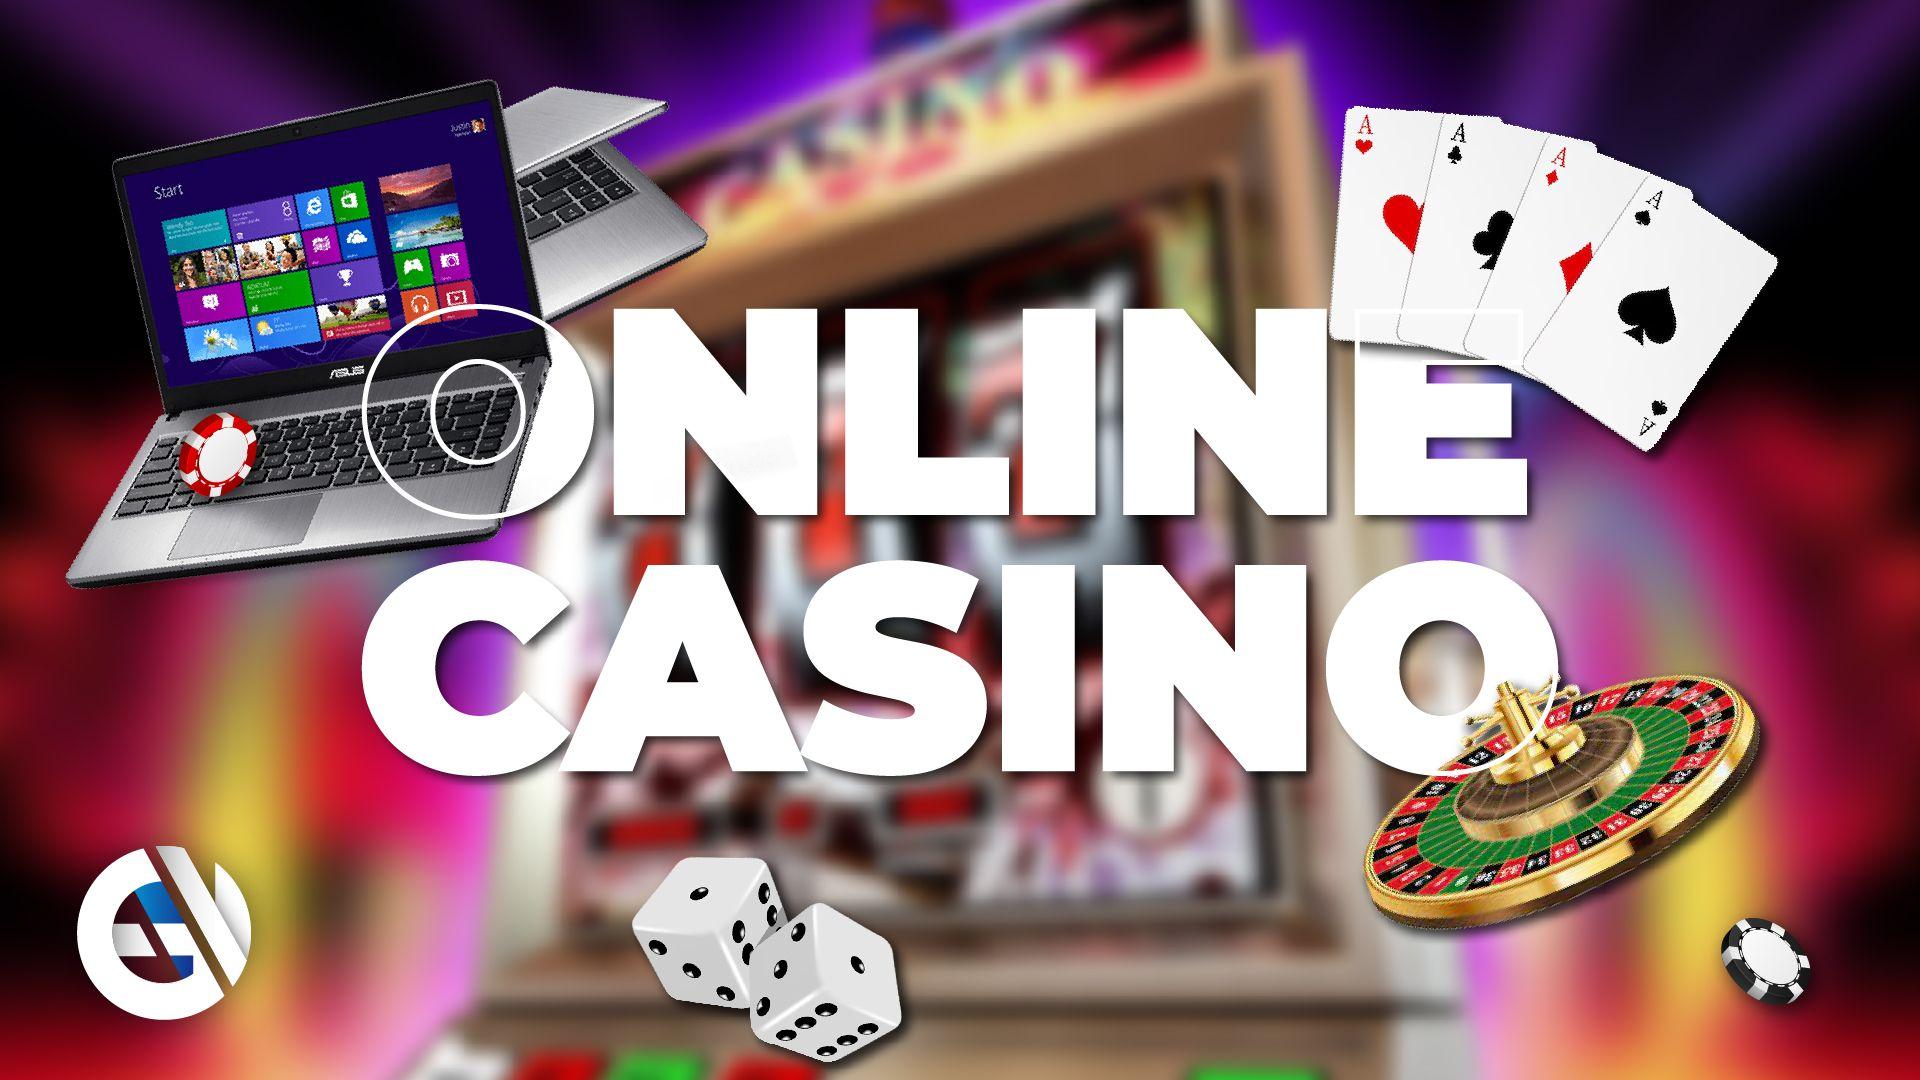 Segurança do casino online: como verificar a sua experiência de jogo?